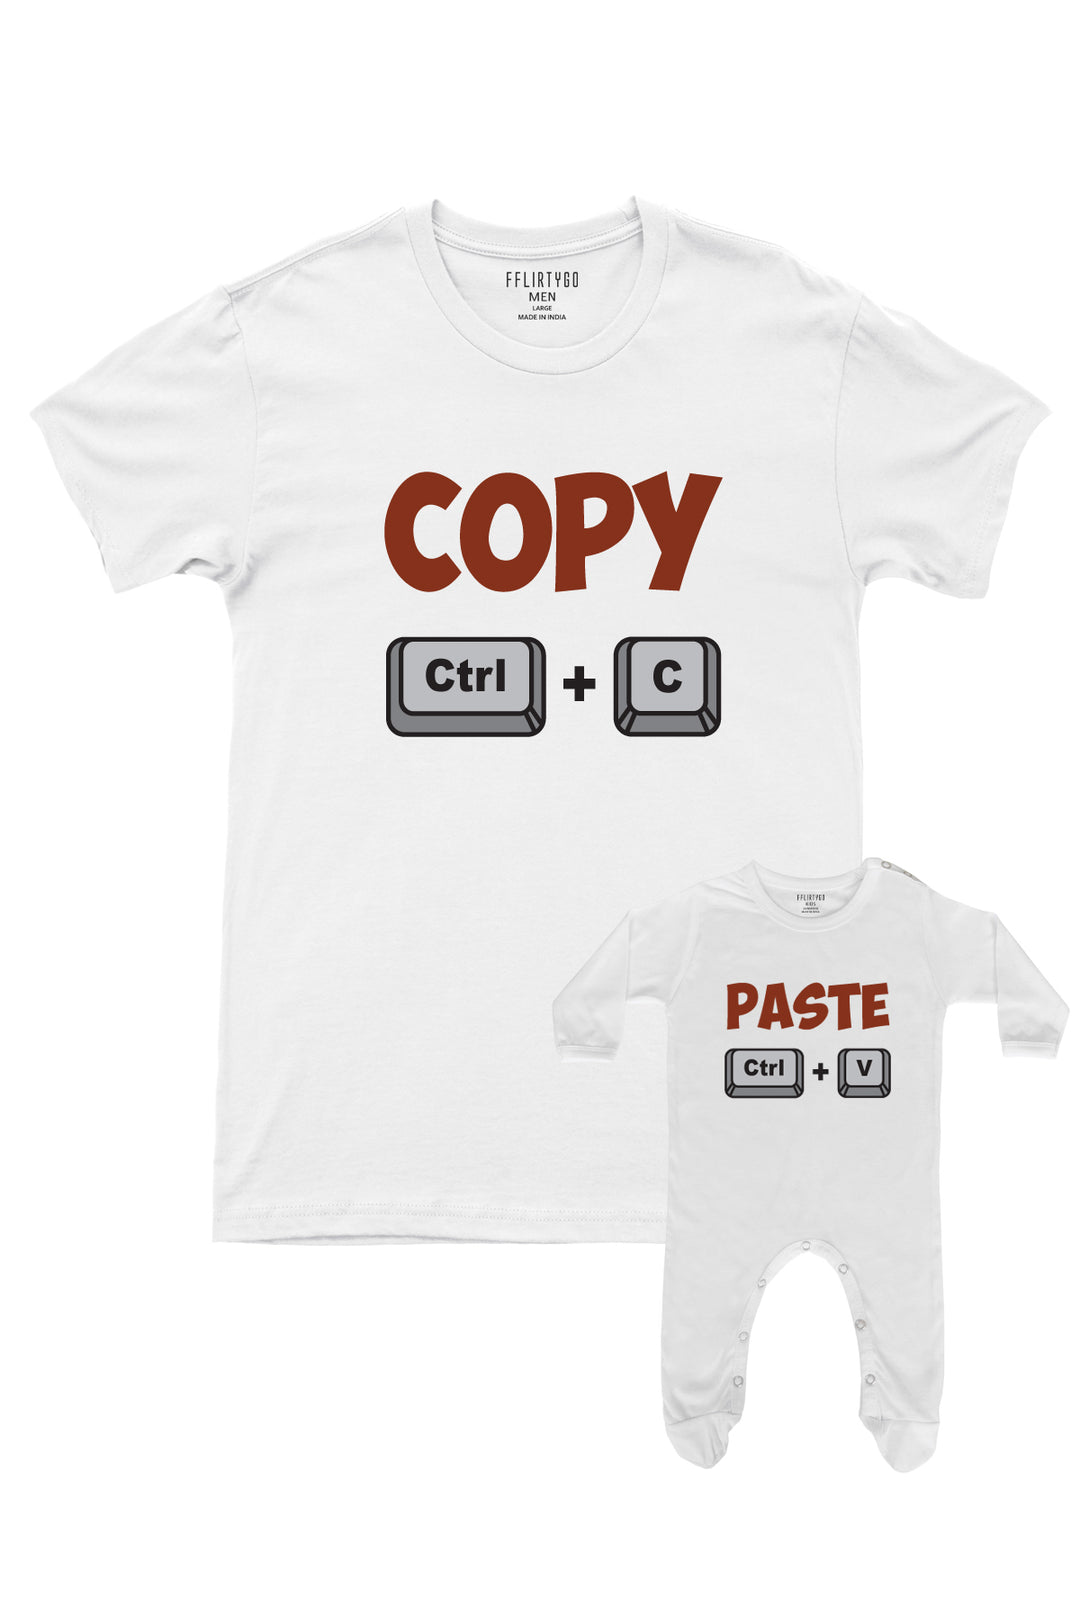 Copy - Paste